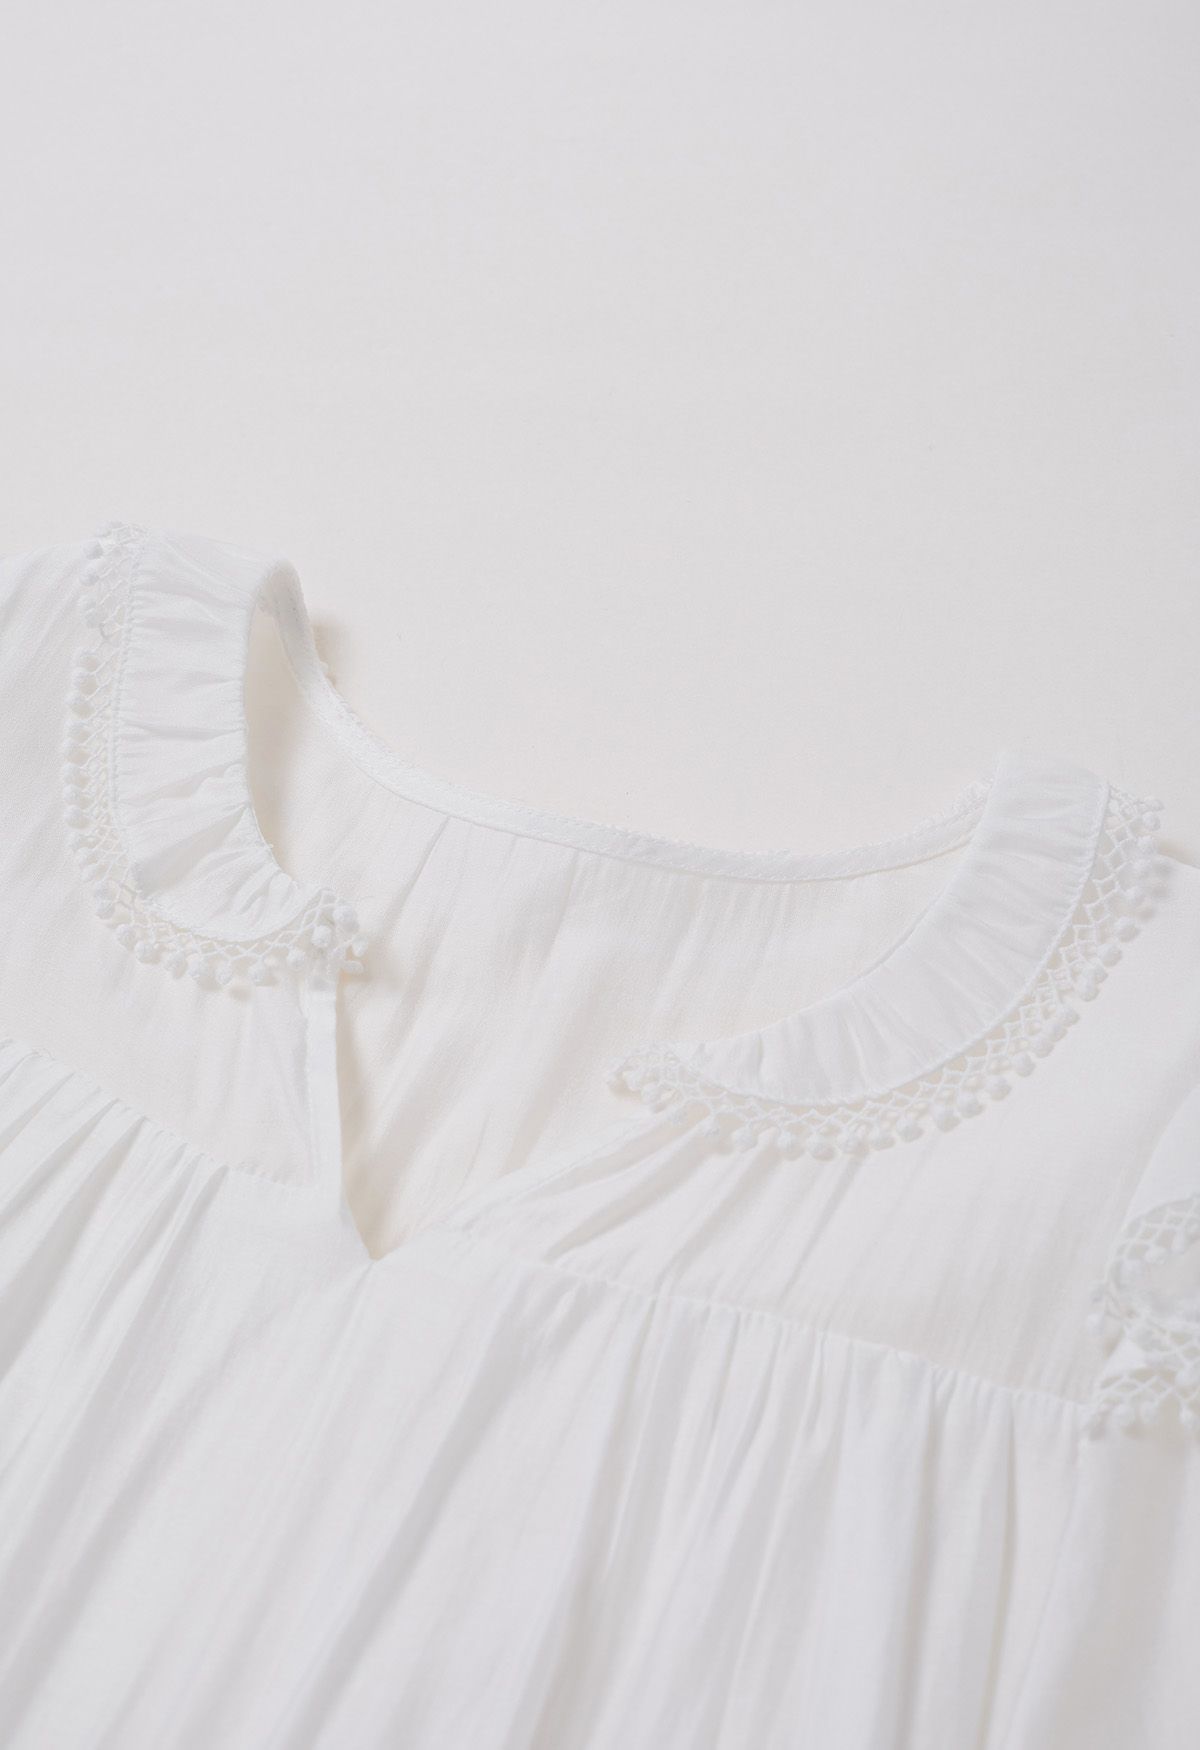 فستان قصير بأكمام متدرجة وتفاصيل هامشية باللون الأبيض